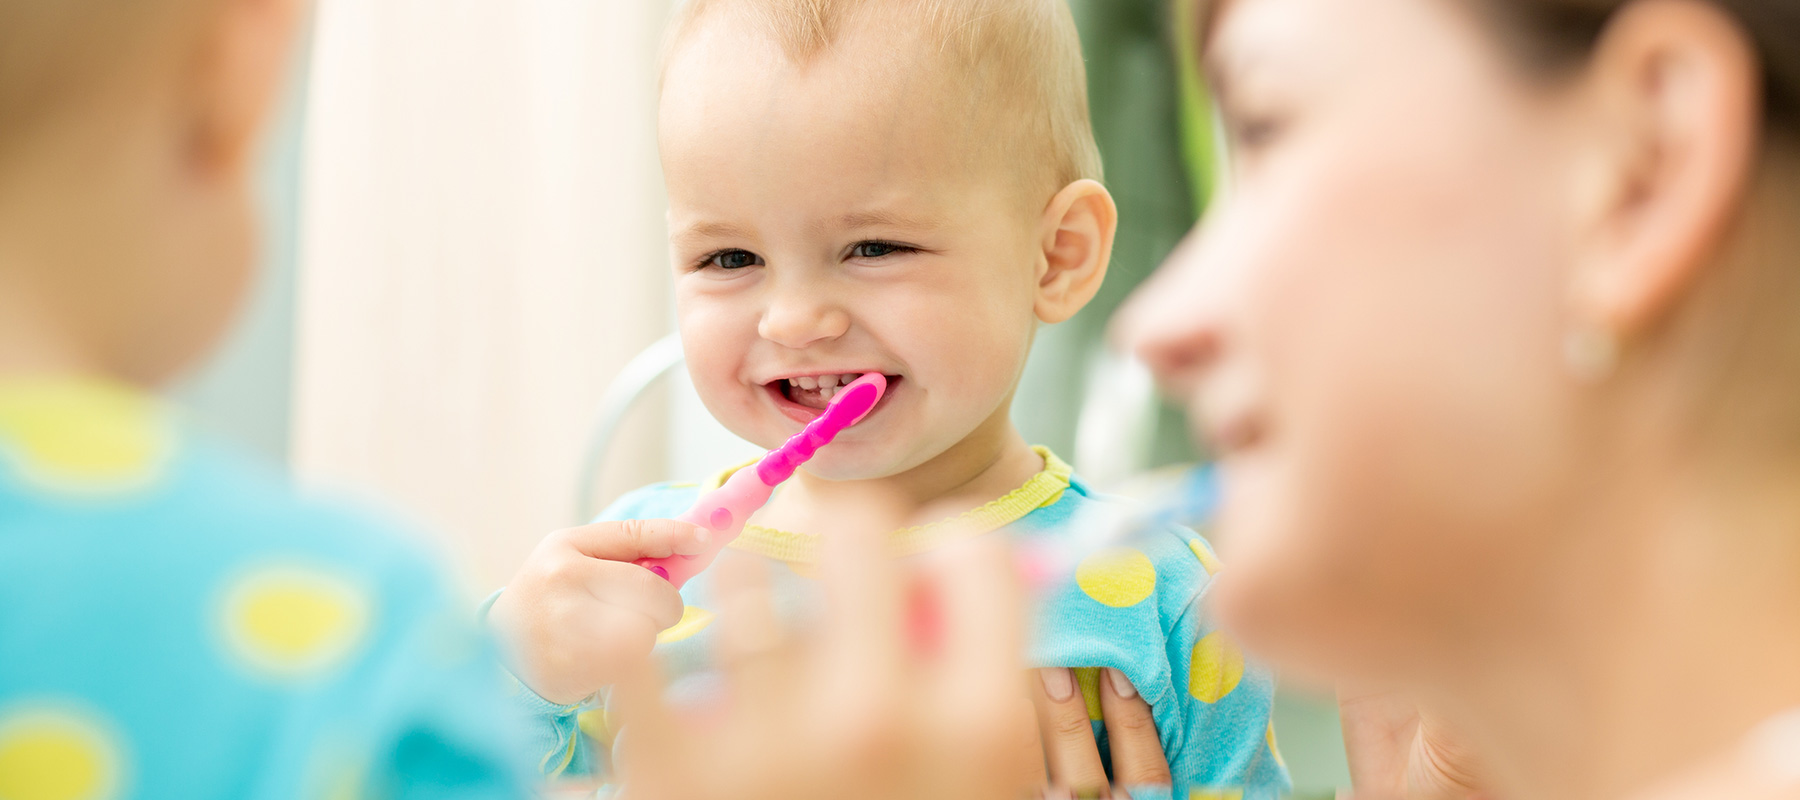 پوسیدگی دندان های شیری در کودکان و عواقب آن بر دندان های دائمی در صورت عدم درمان